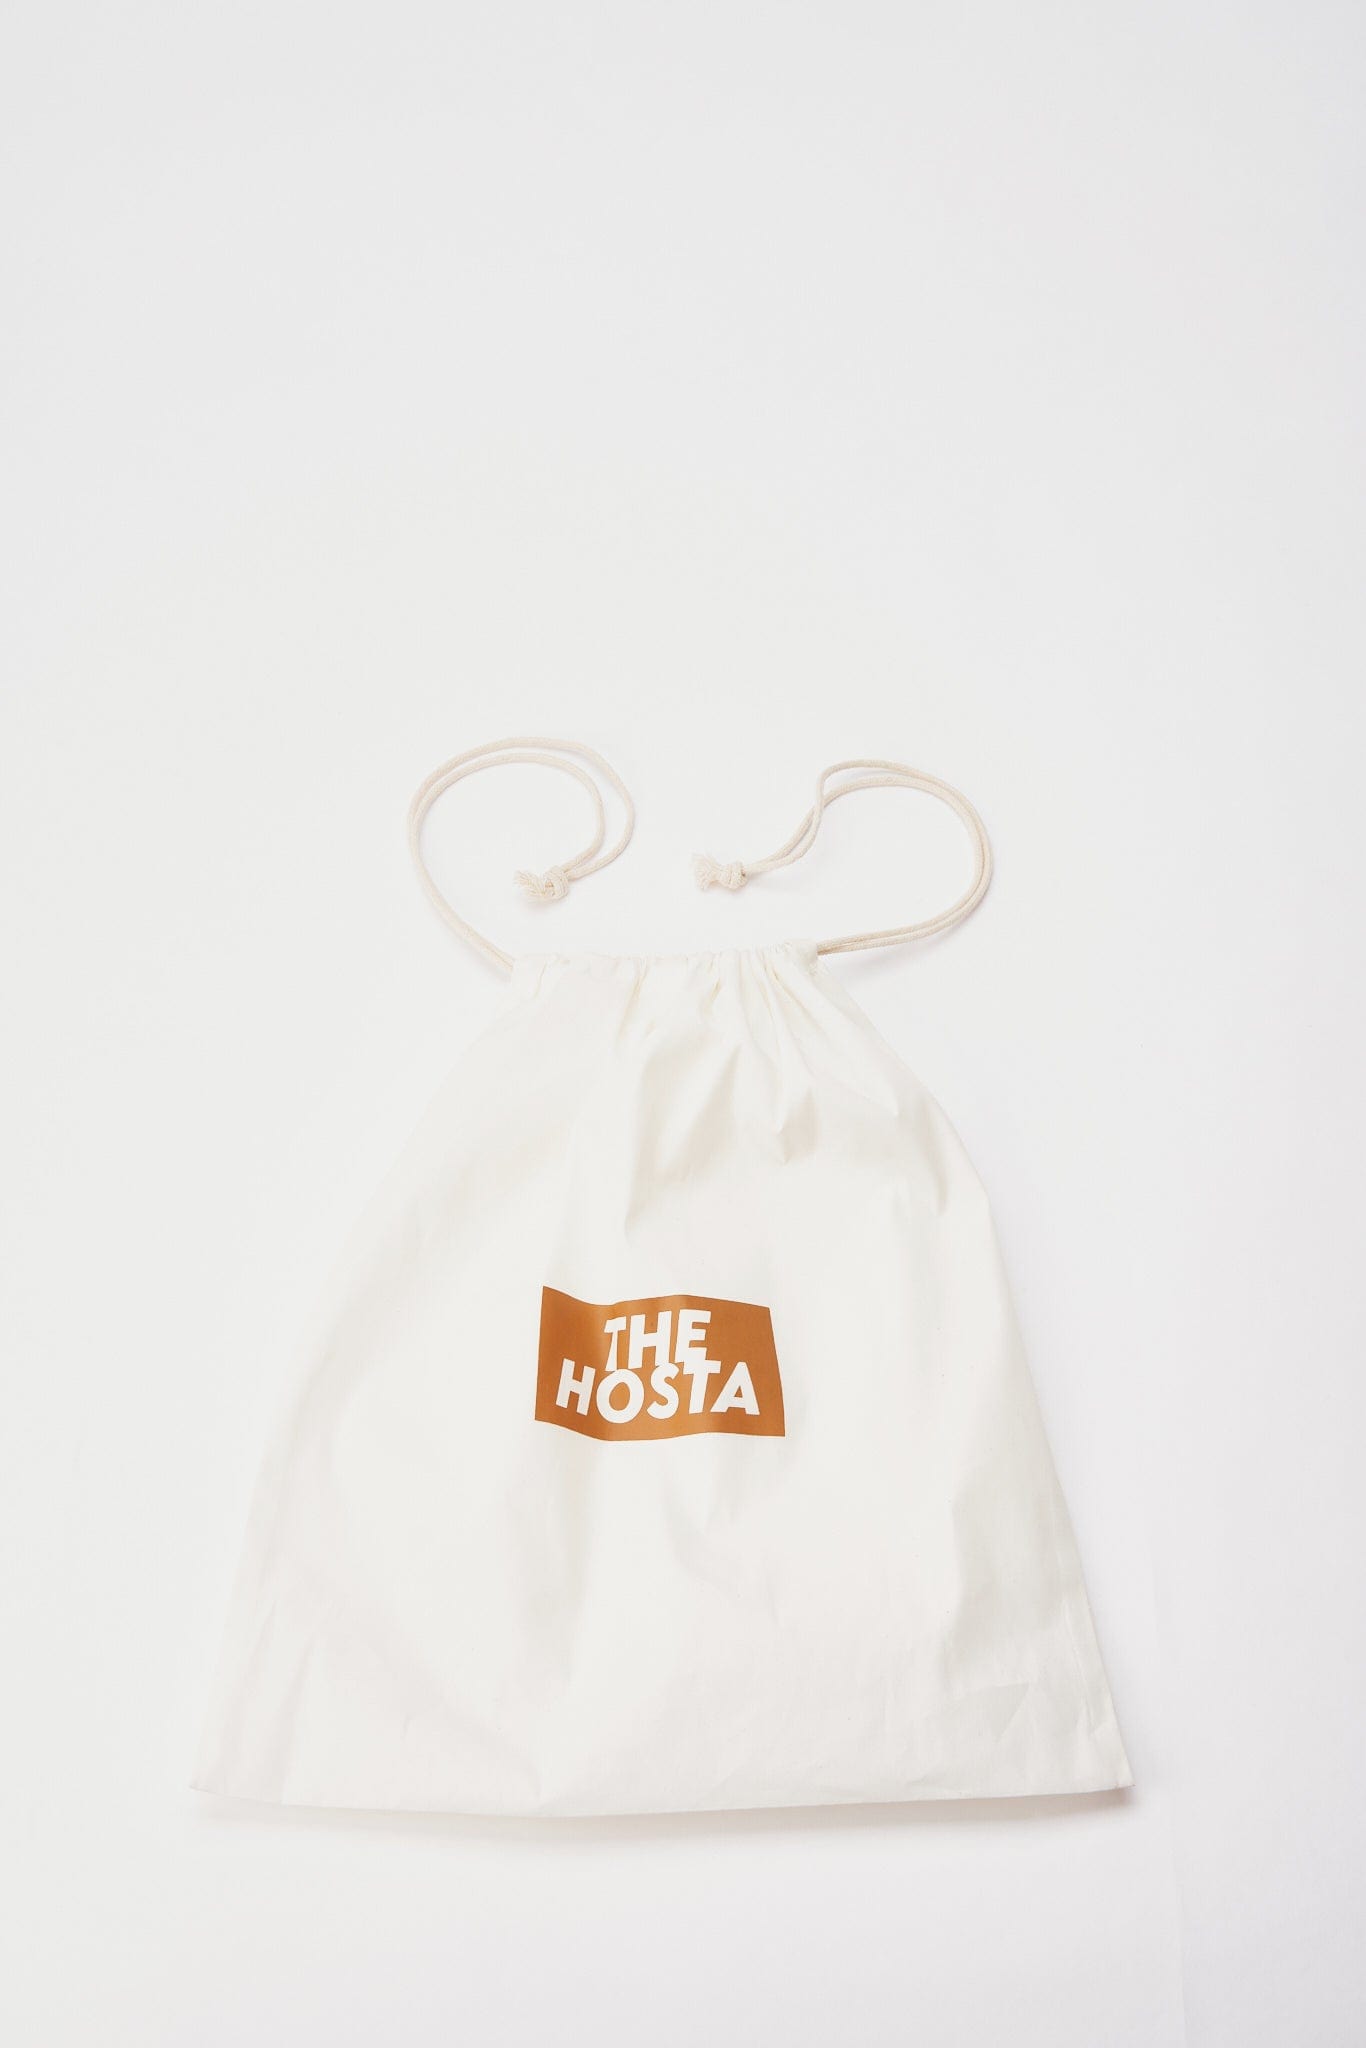 Gucci Vintage Brown Nylon Monogram Shoulder Bag